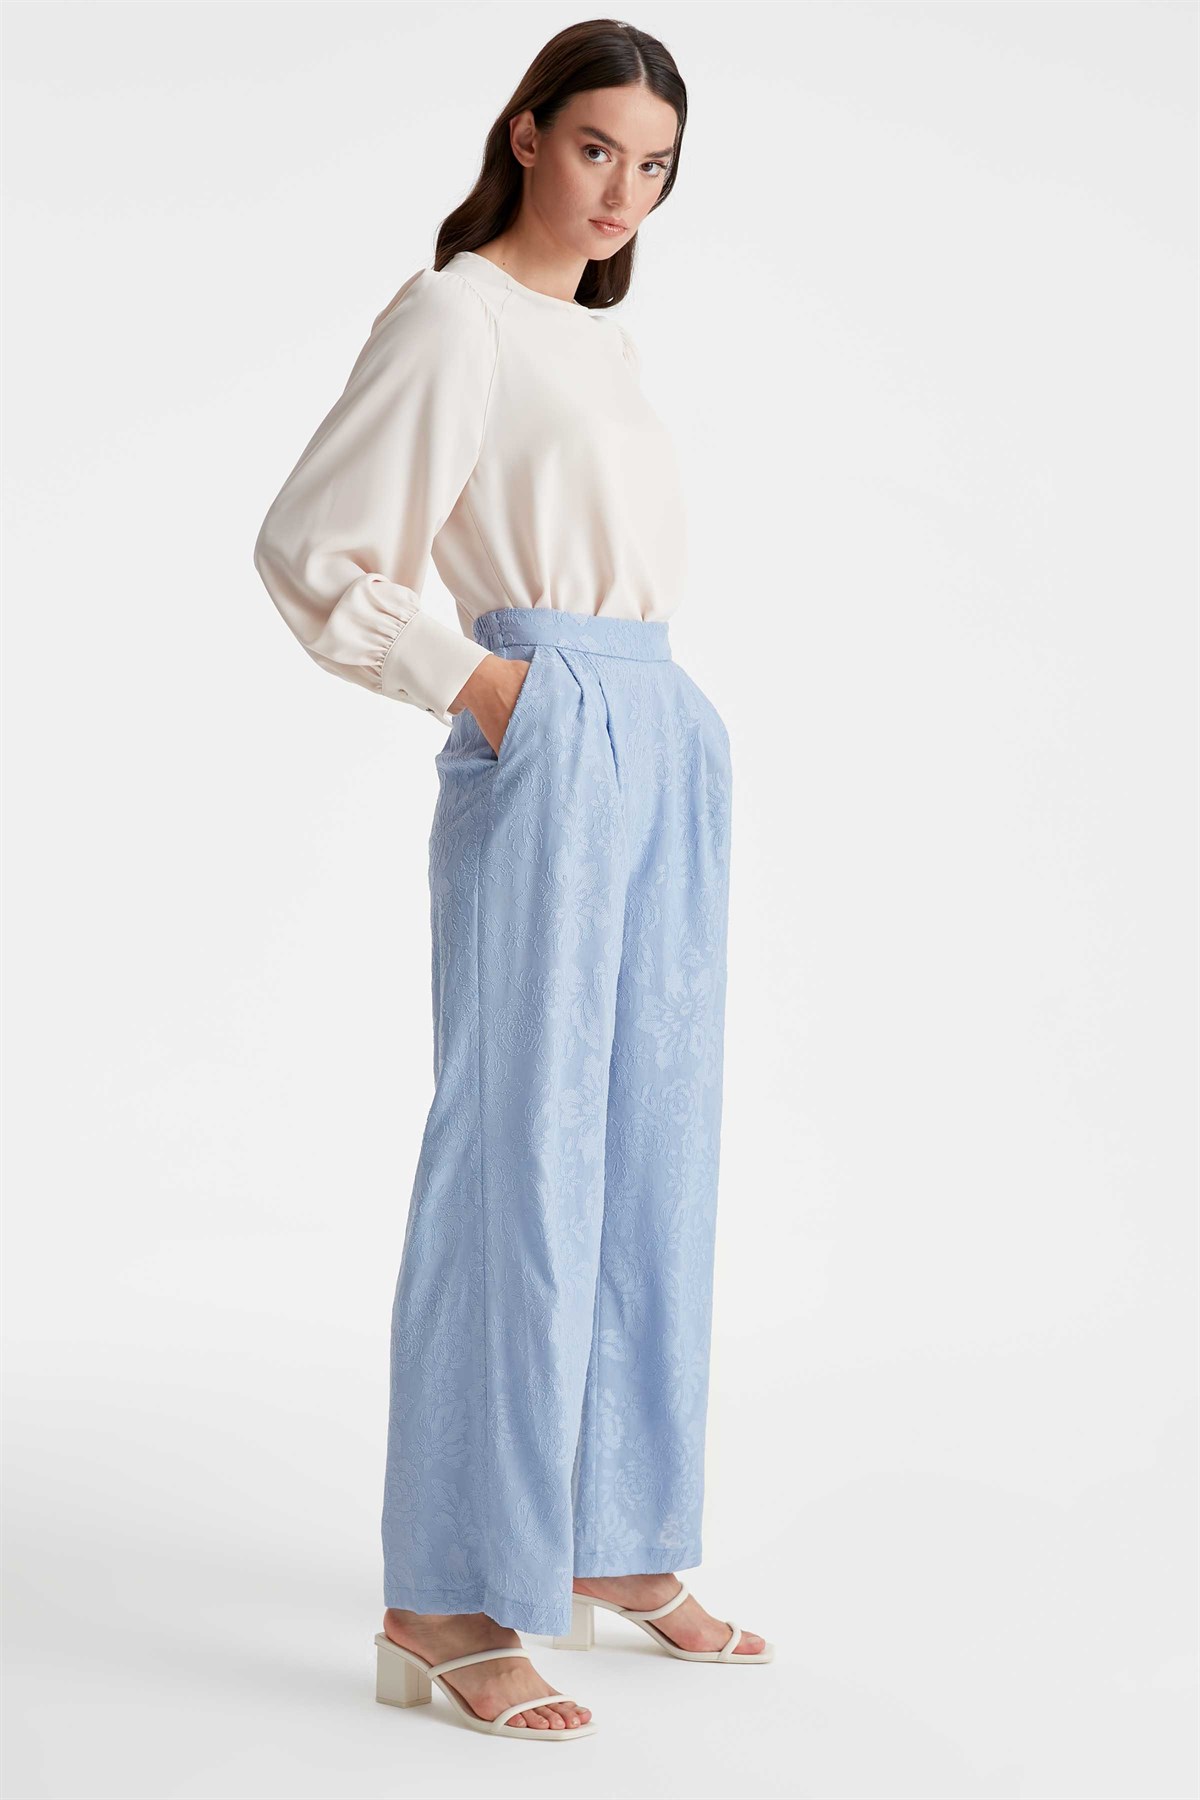 Jacquard Single Pleat Trousers - Light Blue